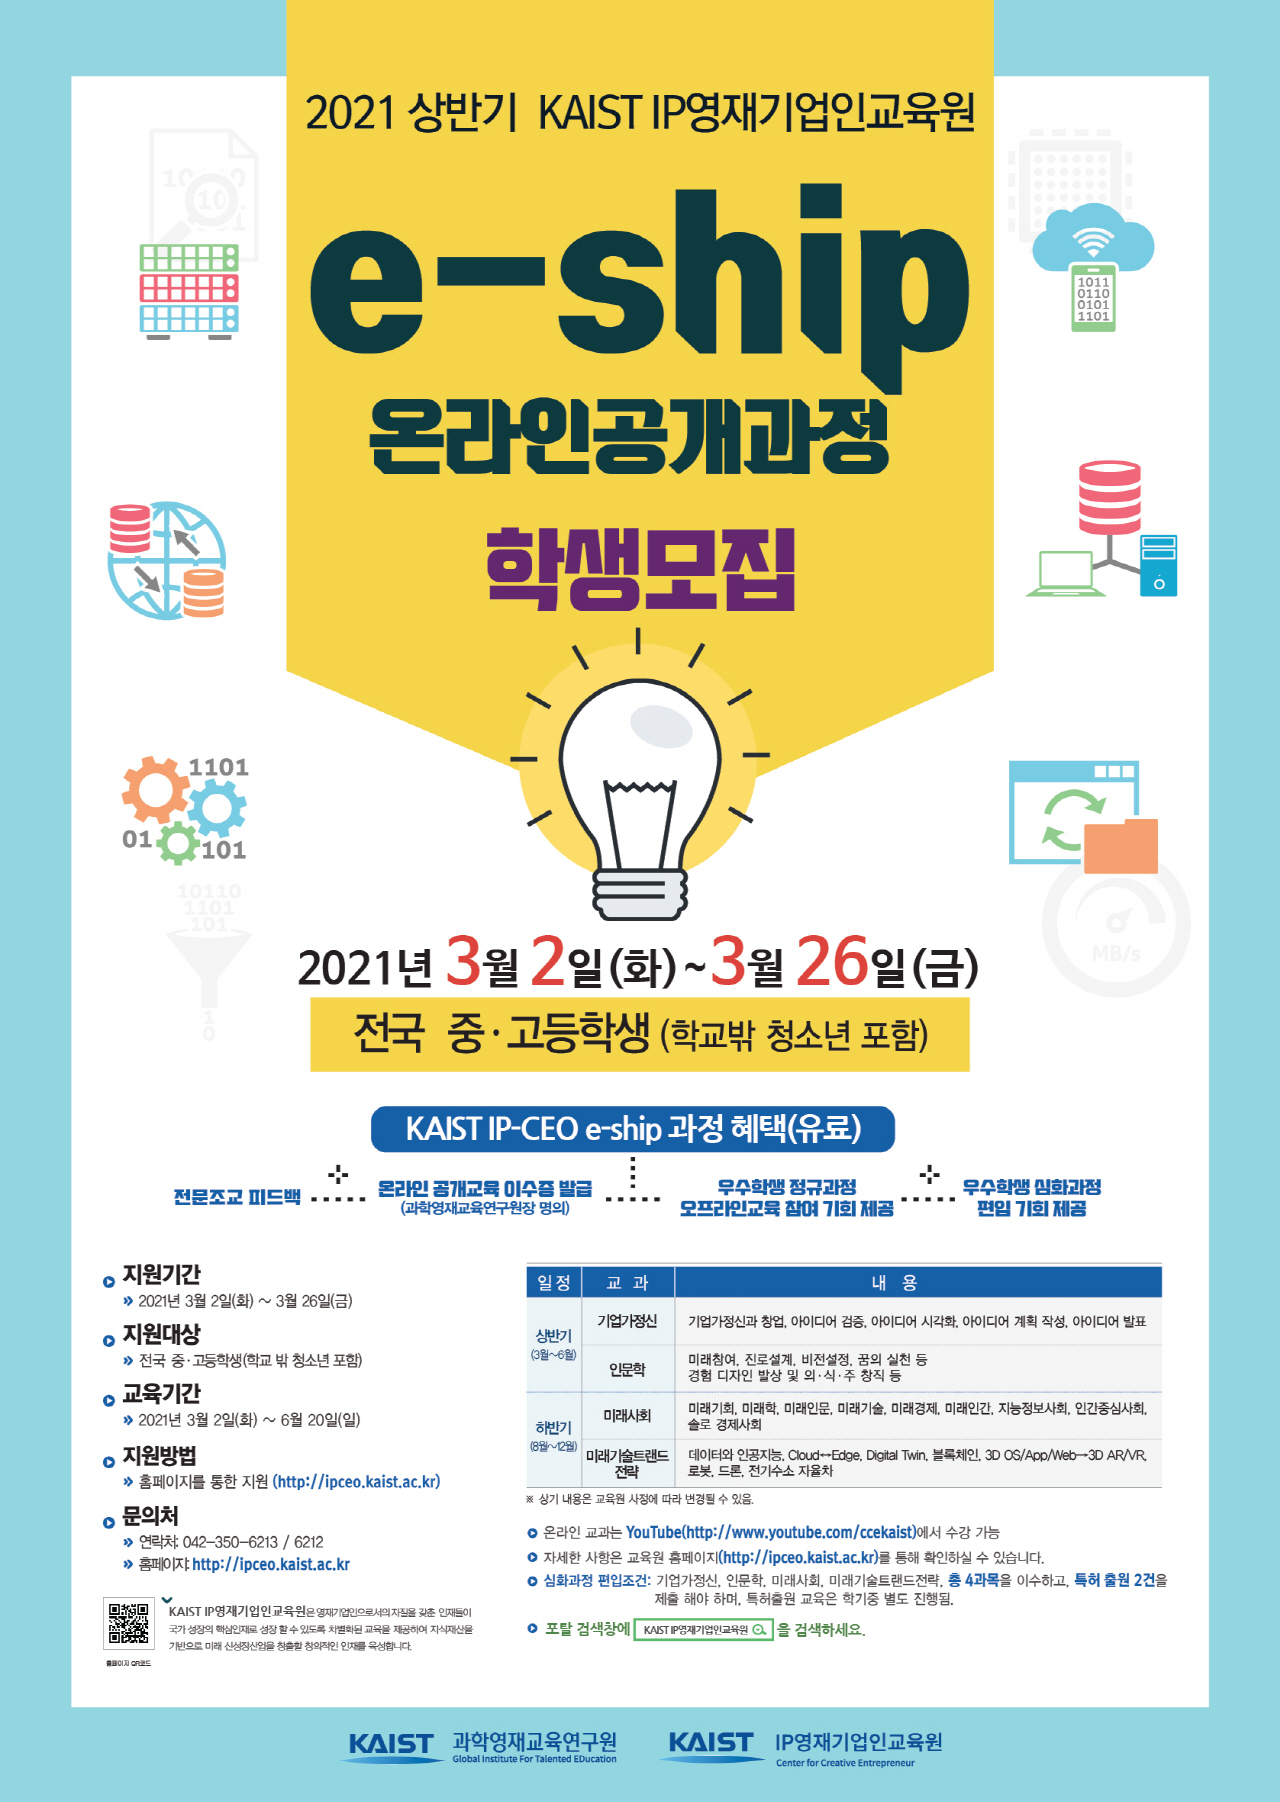 한국과학기술원(kaist) 카이스트 IP 영재기업인교육원_2021년 공개과정 홍보 포스터_1280